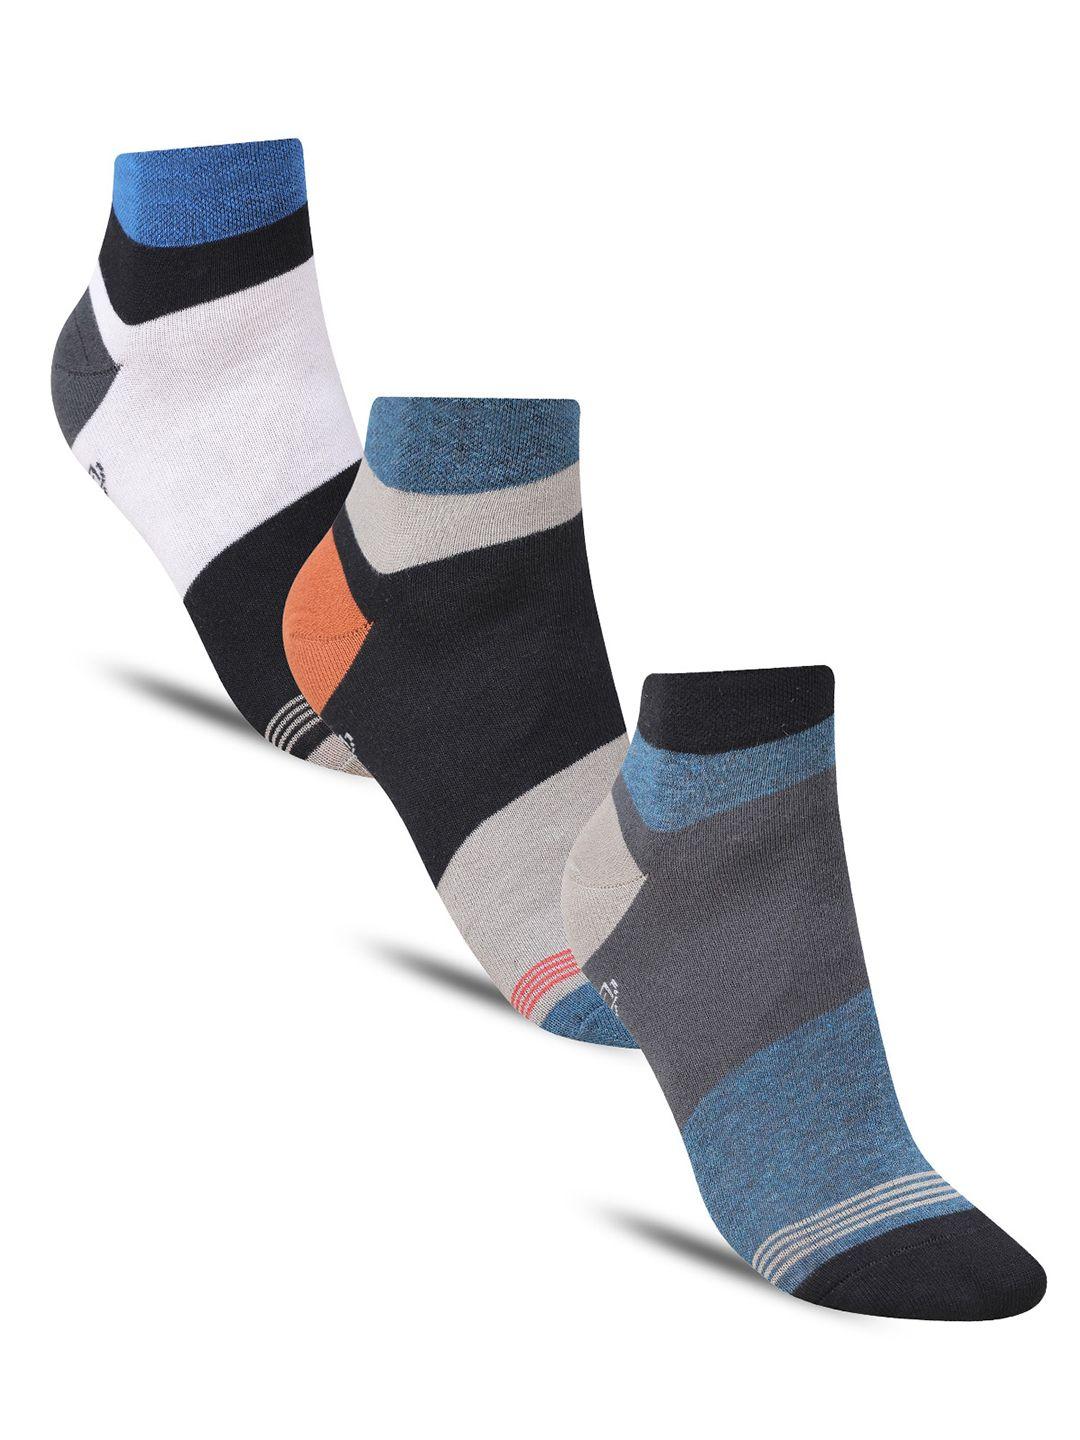 dollar socks men pack of 3 colourblocked cotton ankle-length socks